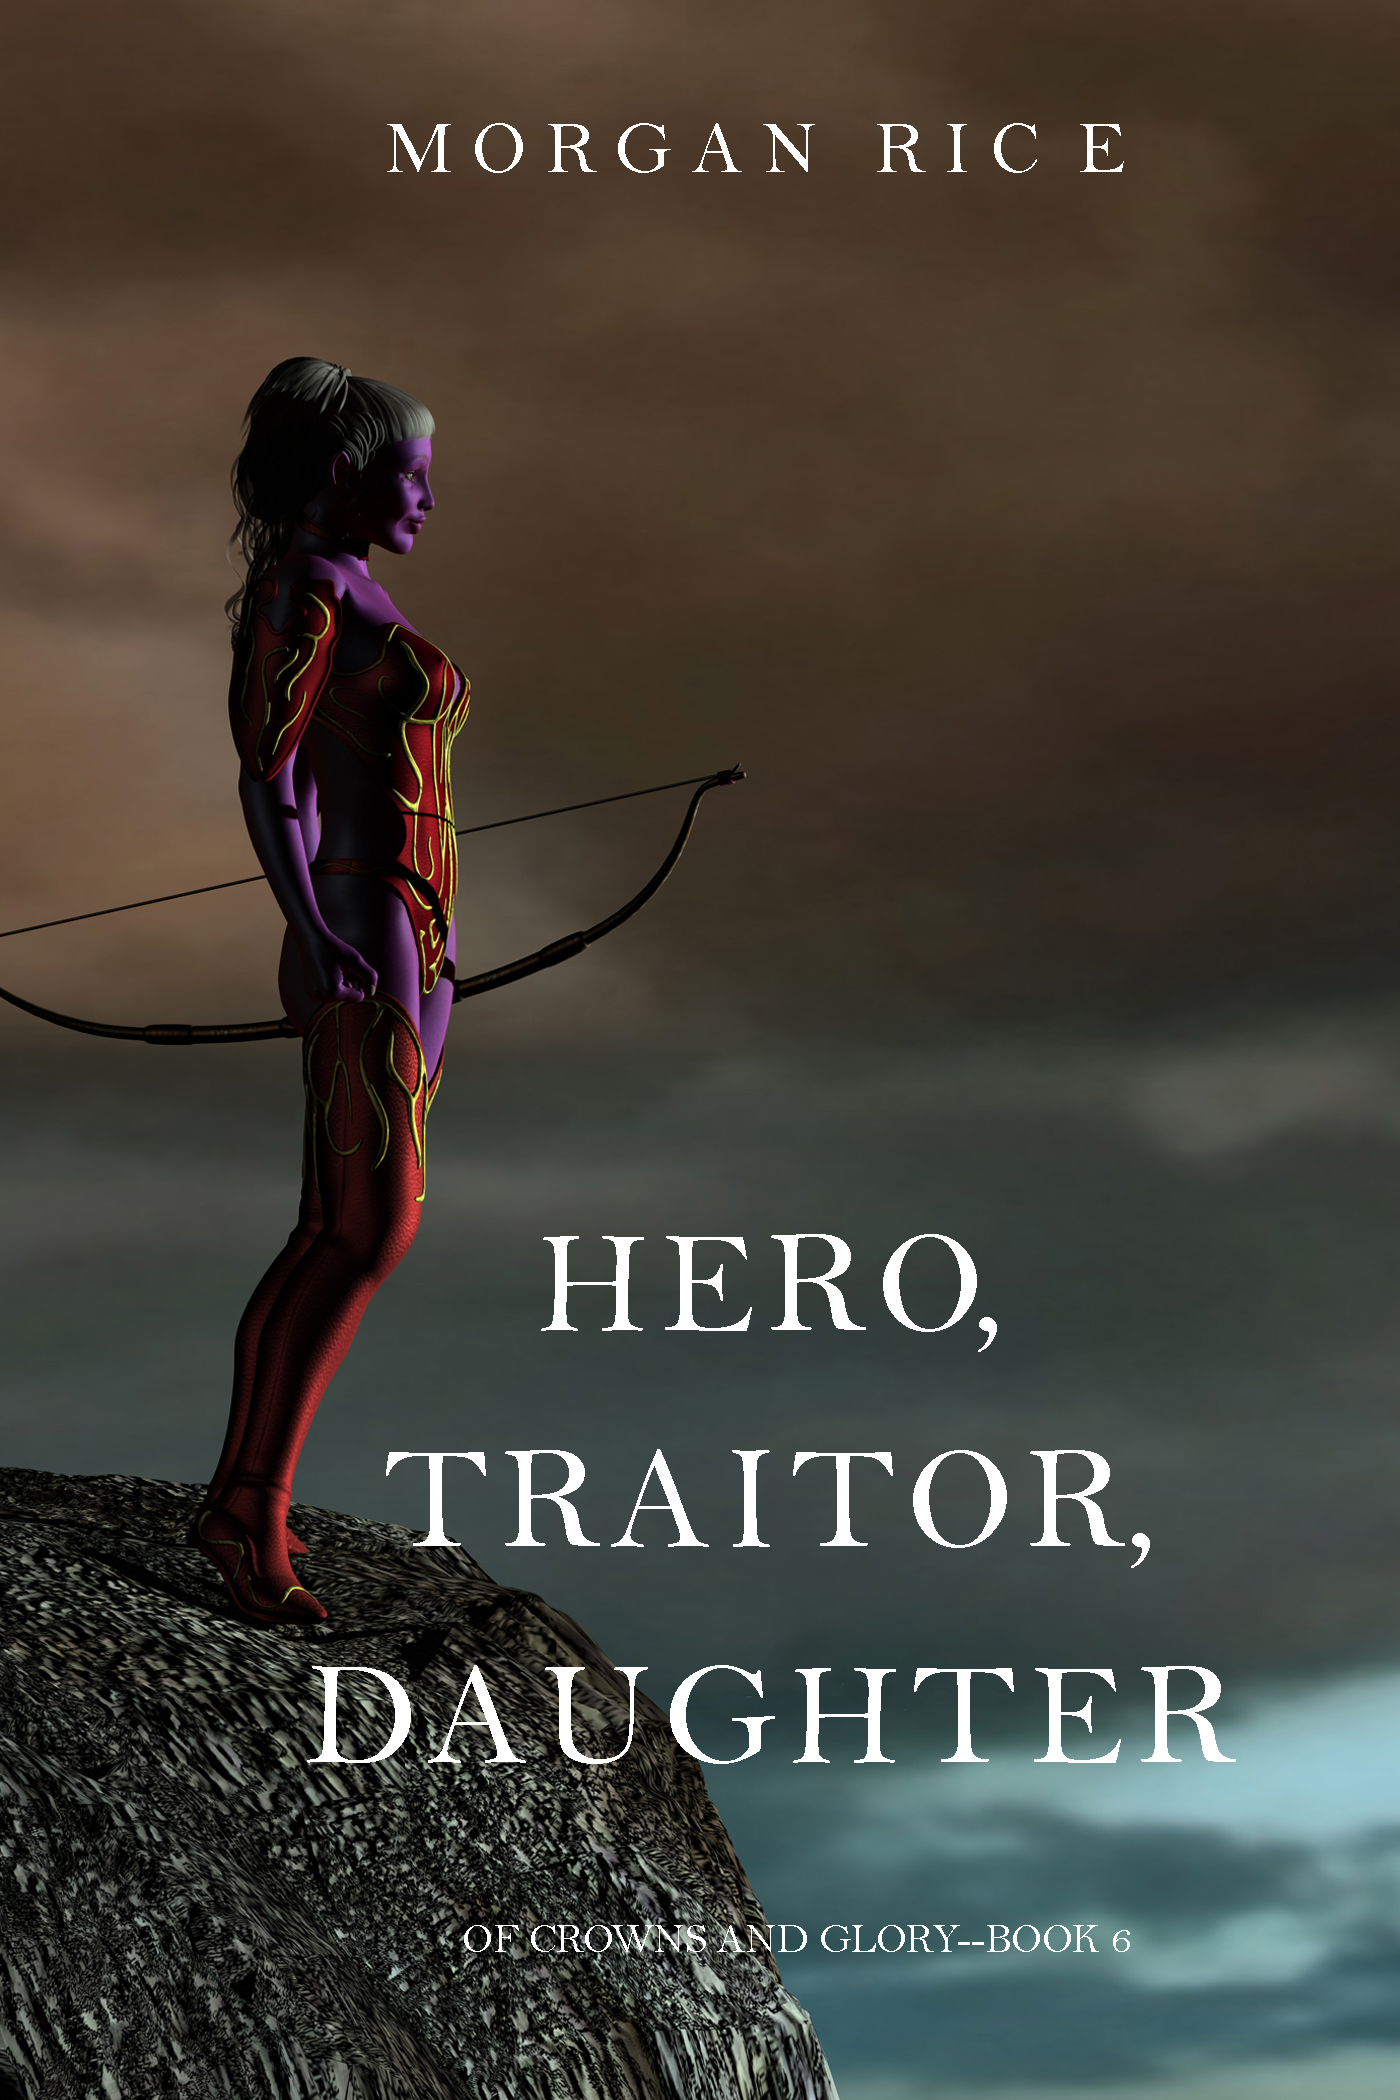 Книга Hero, Traitor, Daughter из серии , созданная Морган Райс, может относится к жанру Иностранные языки, Боевое фэнтези, Зарубежное фэнтези. Стоимость электронной книги Hero, Traitor, Daughter с идентификатором 25093964 составляет 299.00 руб.